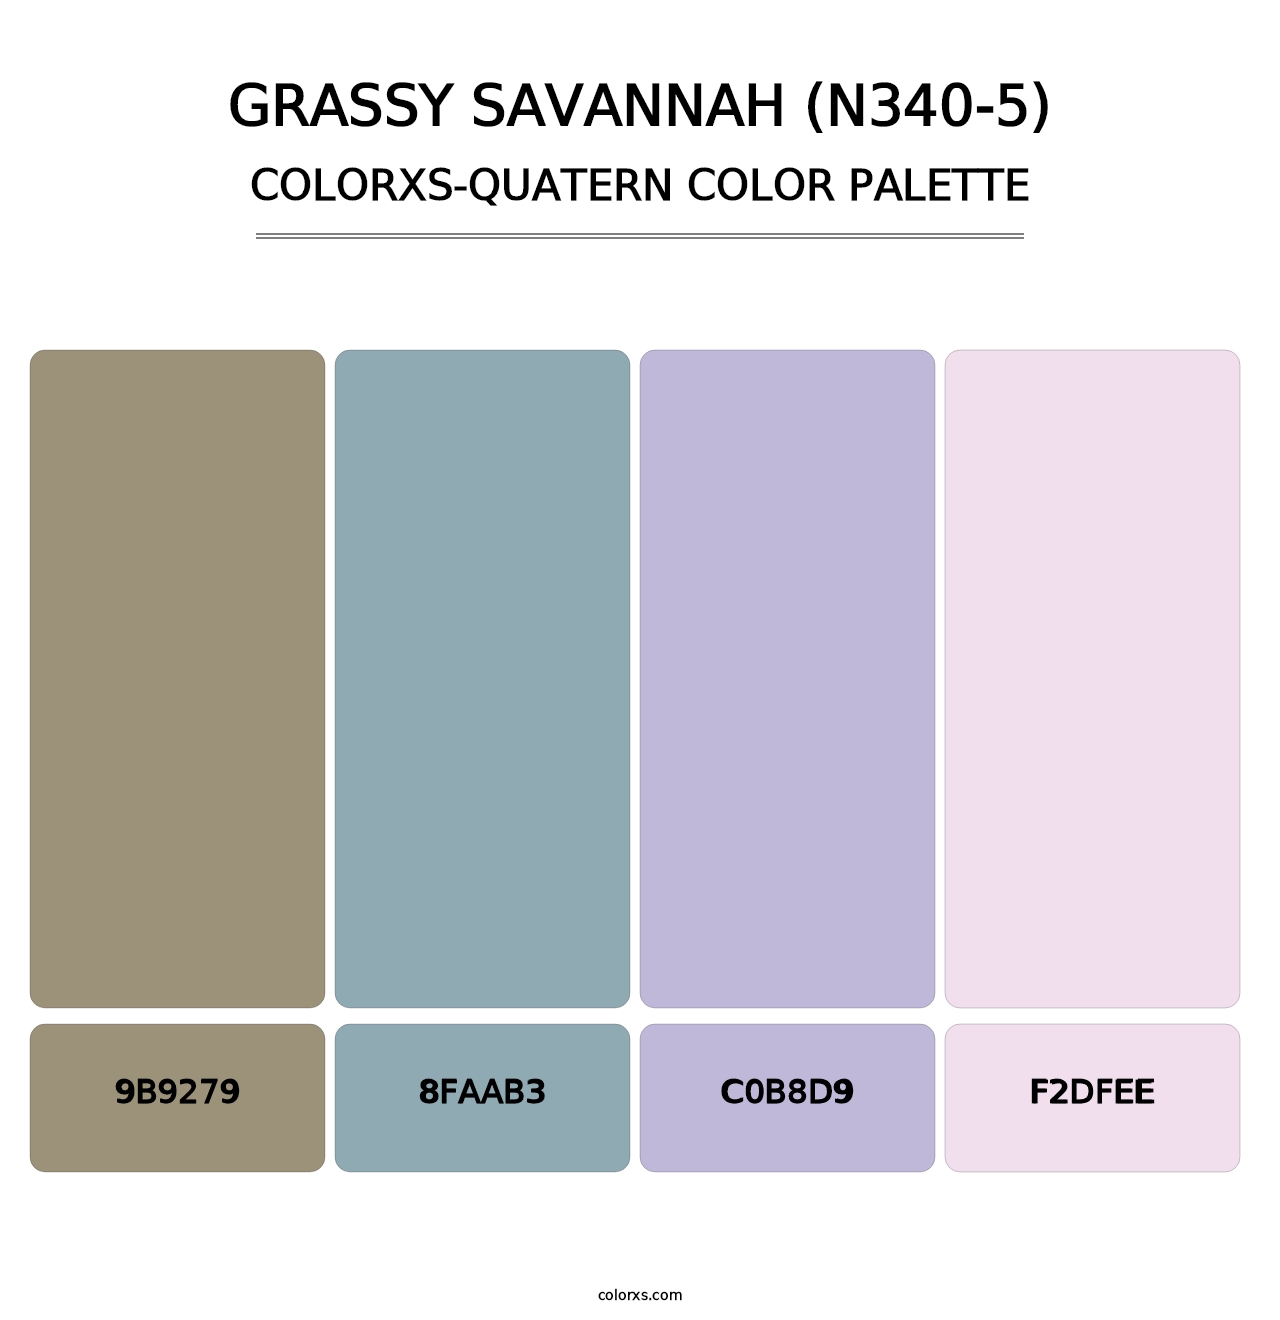 Grassy Savannah (N340-5) - Colorxs Quatern Palette